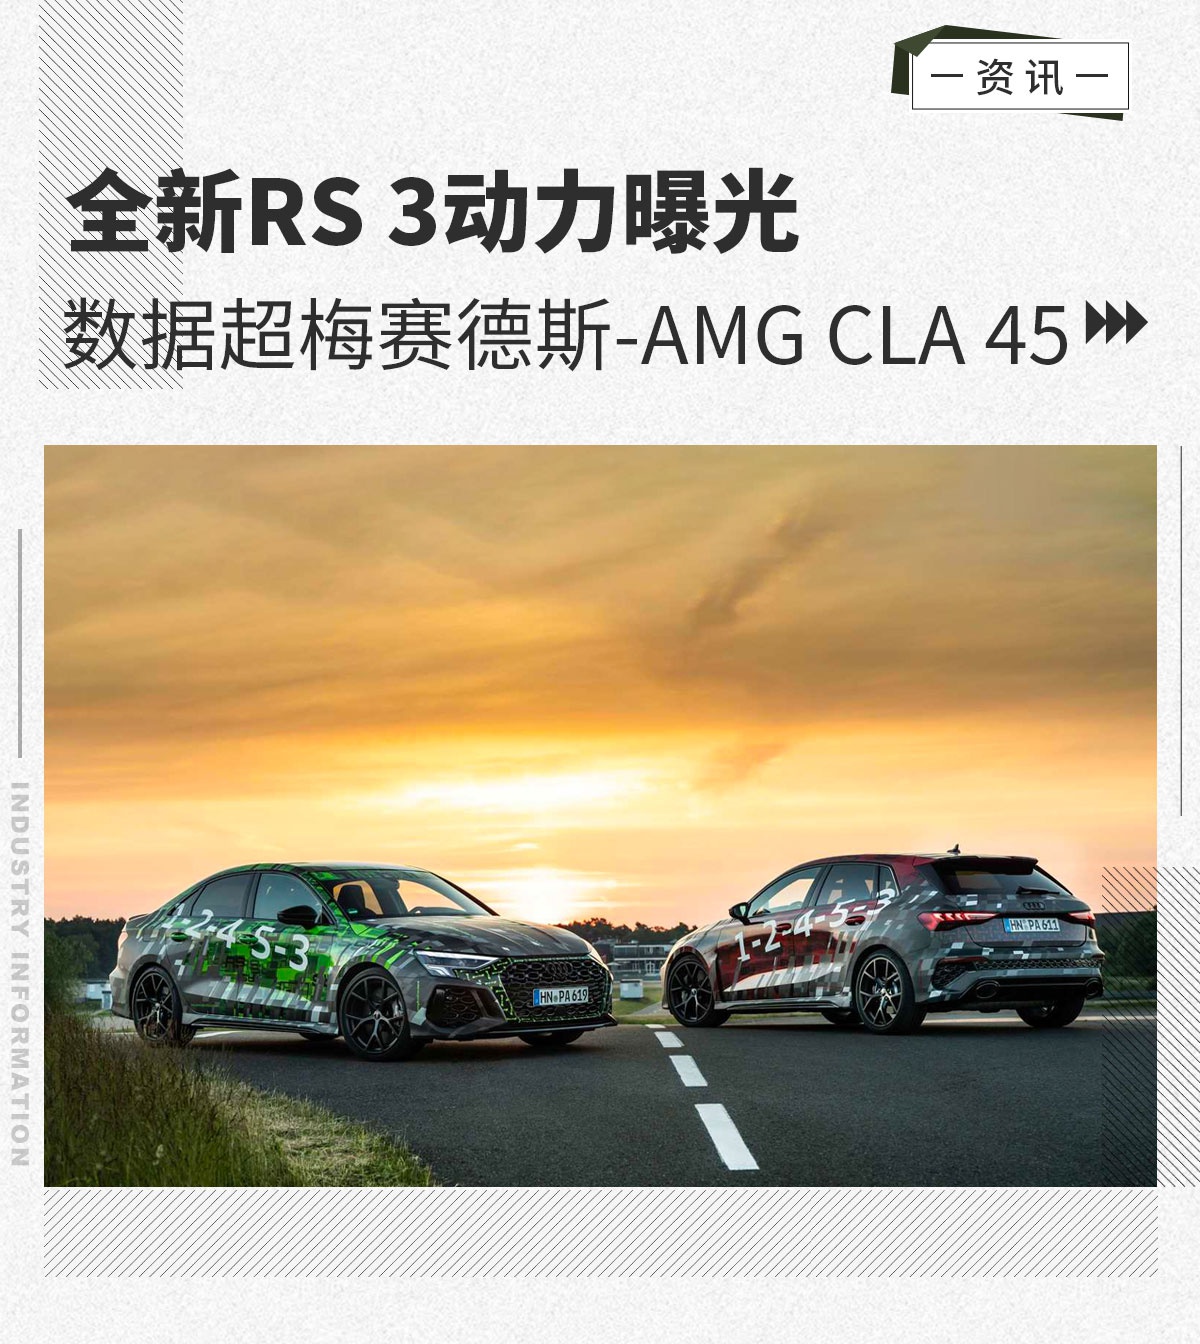 全新奥迪RS 3动力曝光 数据超梅赛德斯-AMG CLA 45